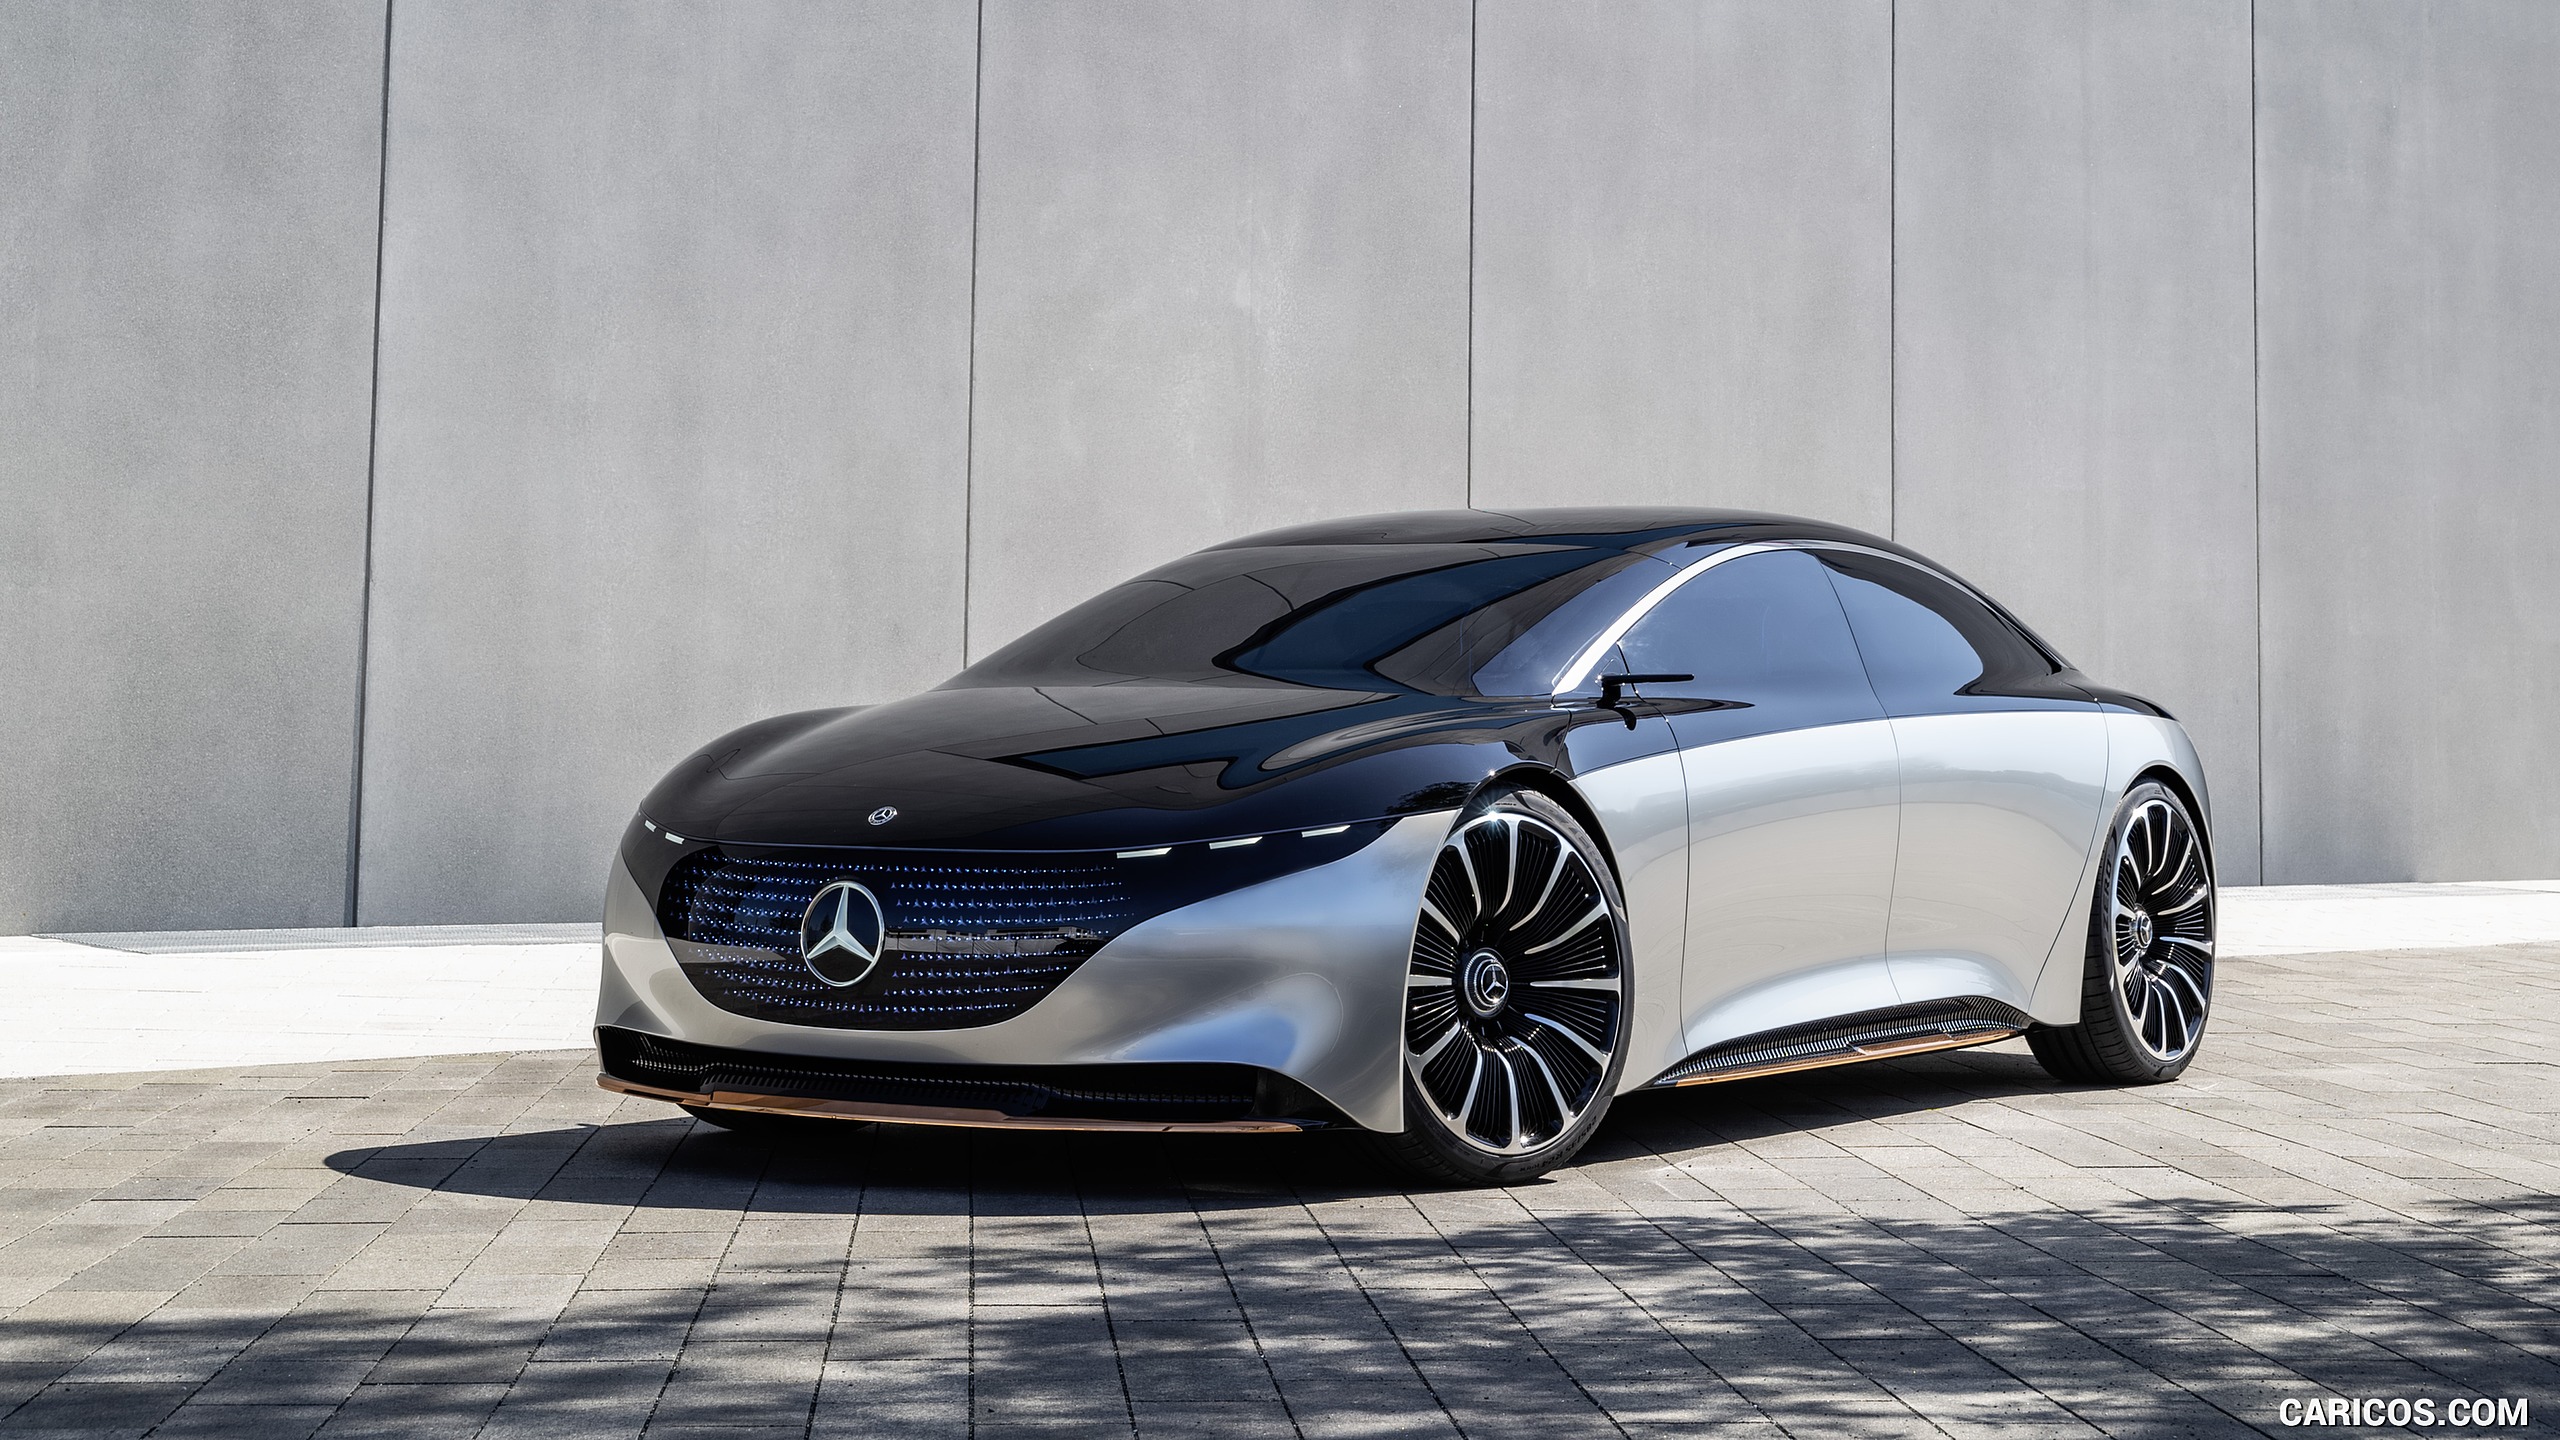 2019 Mercedes-Benz Vision EQS Concept - Front Three-Quarter, #18 of 58